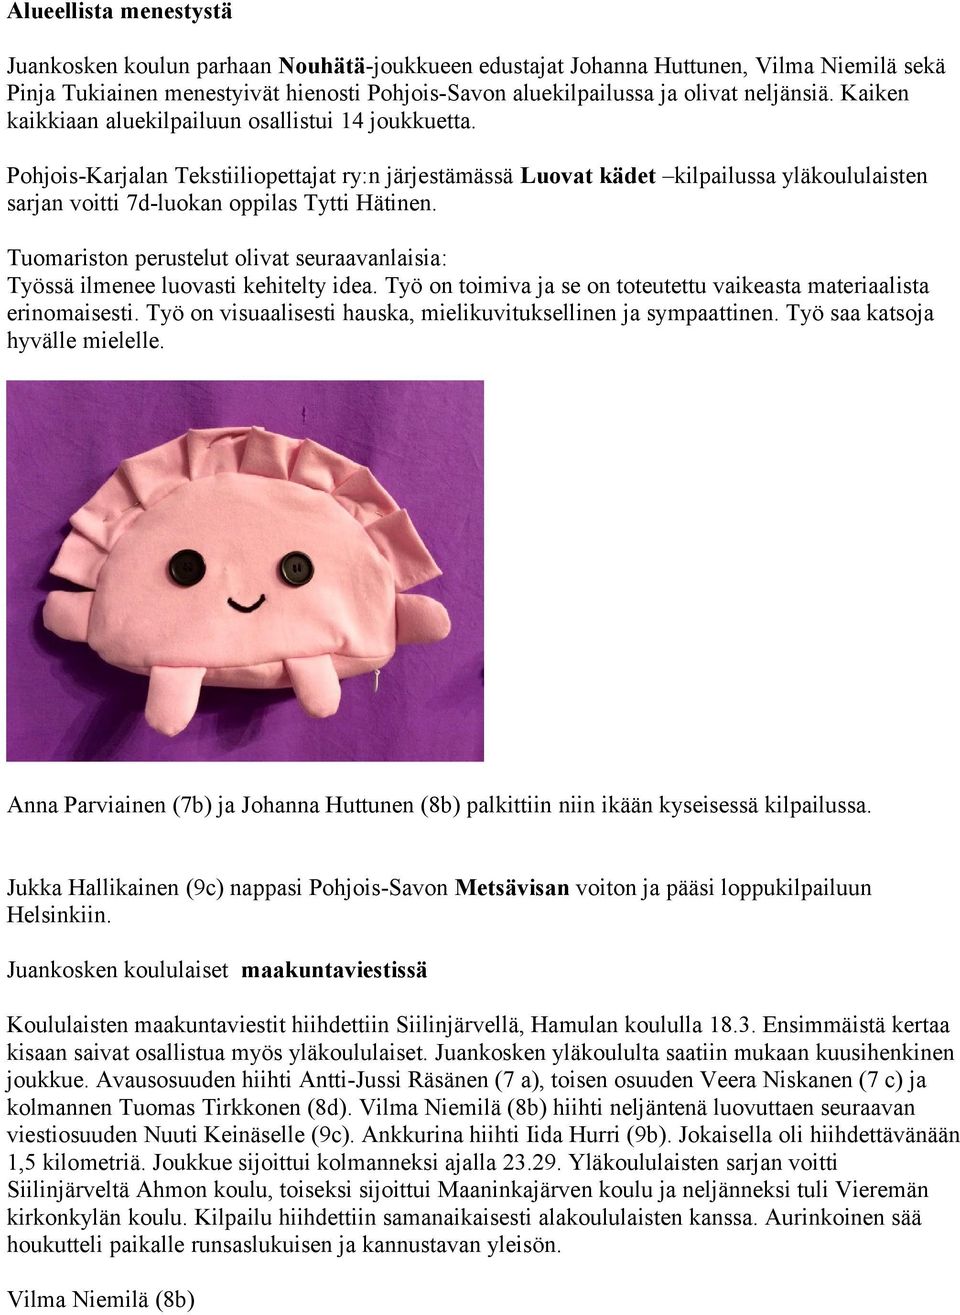 Pohjois-Karjalan Tekstiiliopettajat ry:n järjestämässä Luovat kädet kilpailussa yläkoululaisten sarjan voitti 7d-luokan oppilas Tytti Hätinen.